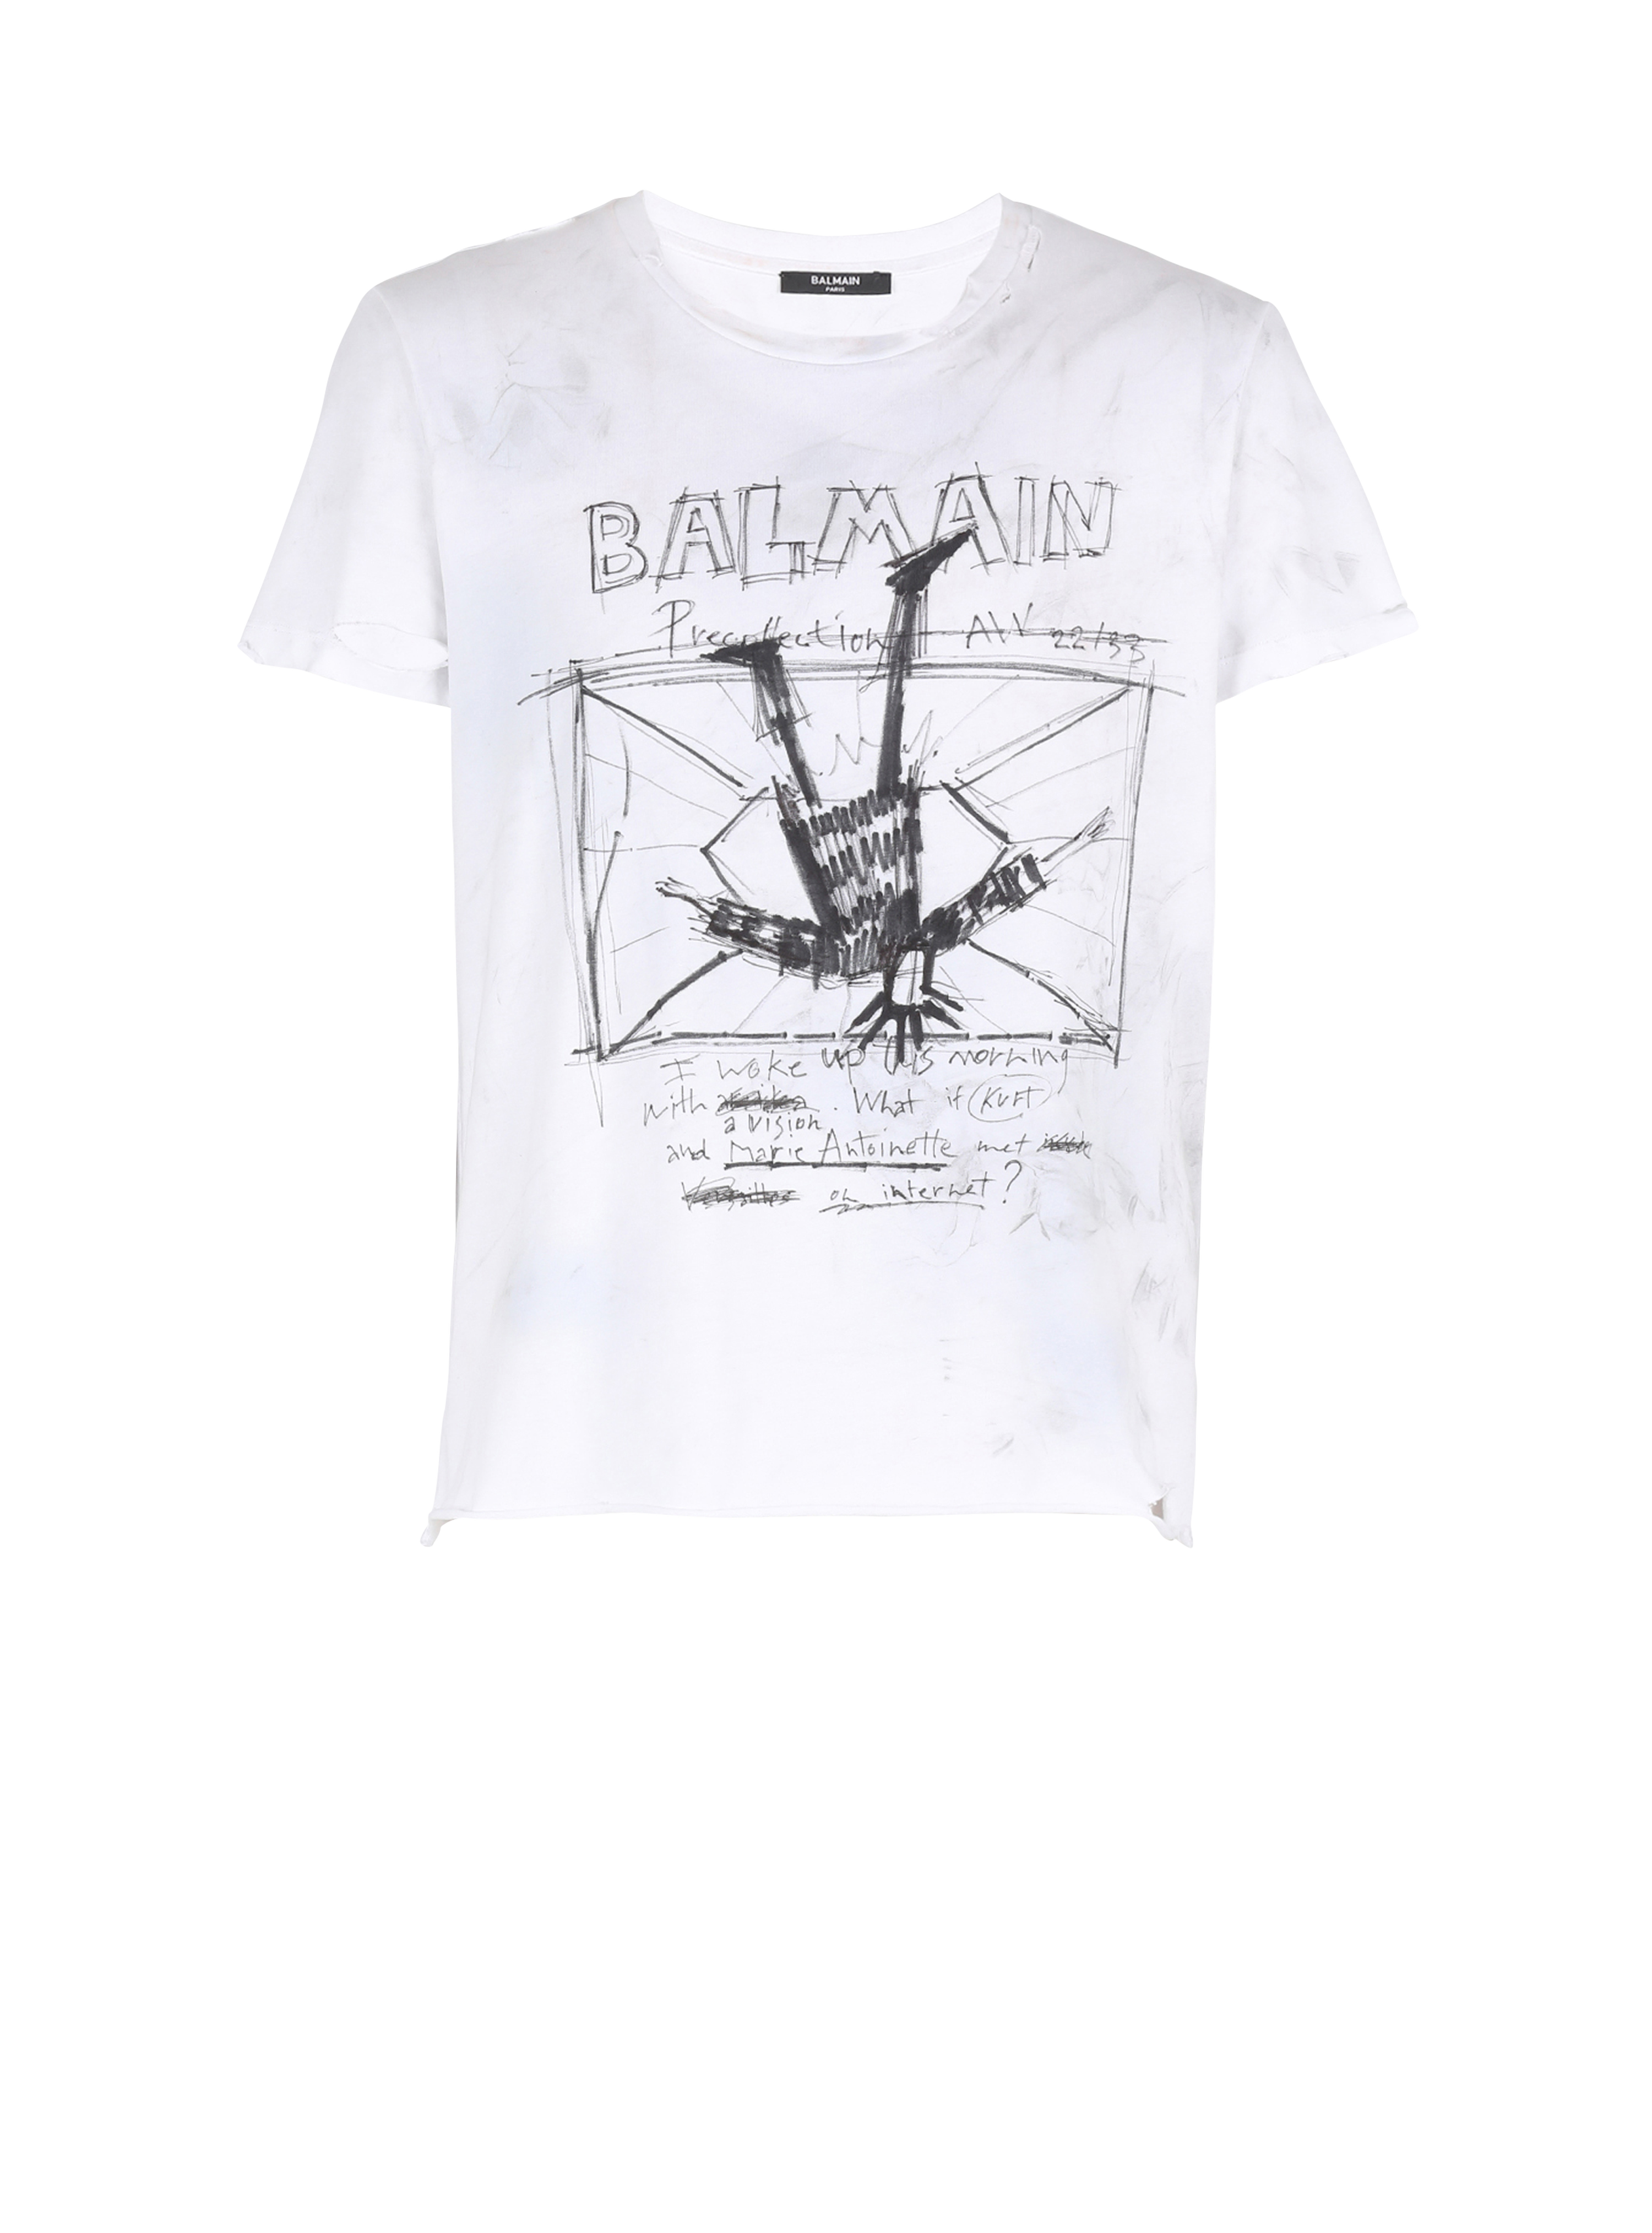 Unisex - Camiseta de algodón con motivos y estampado del logotipo de Balmain, negro